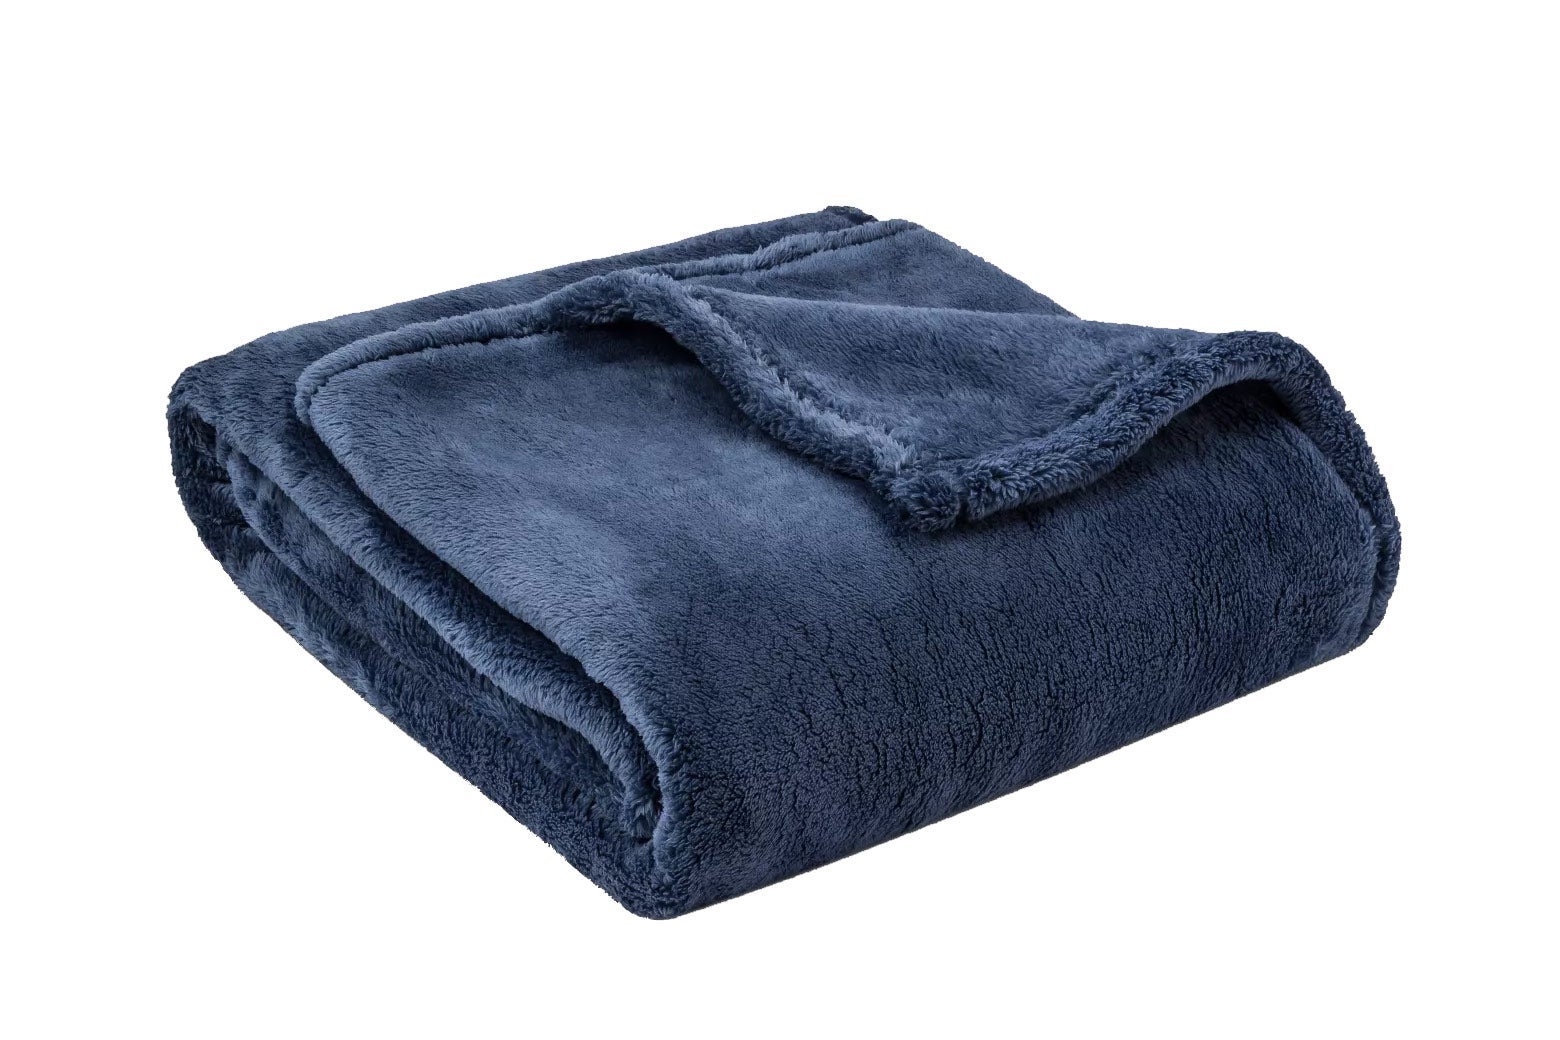 Fuzzy throw blanket